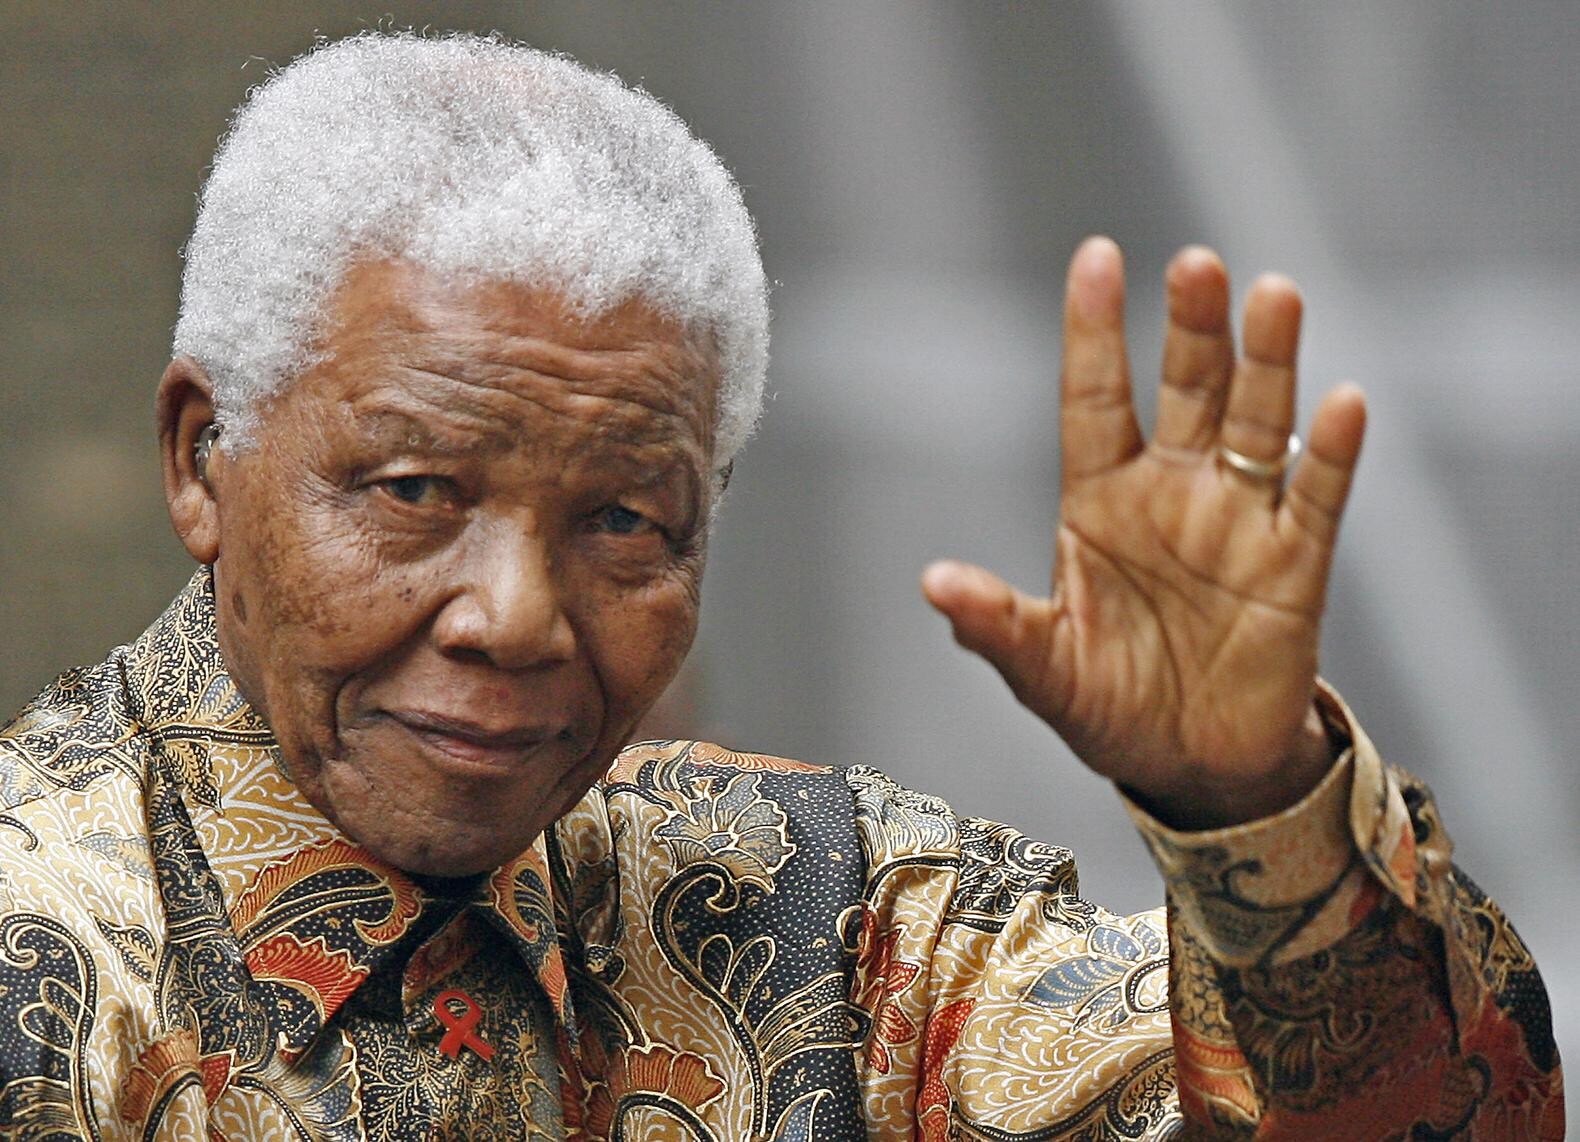 Drie Afrikaanse kunstenaars in de race om monument Mandela